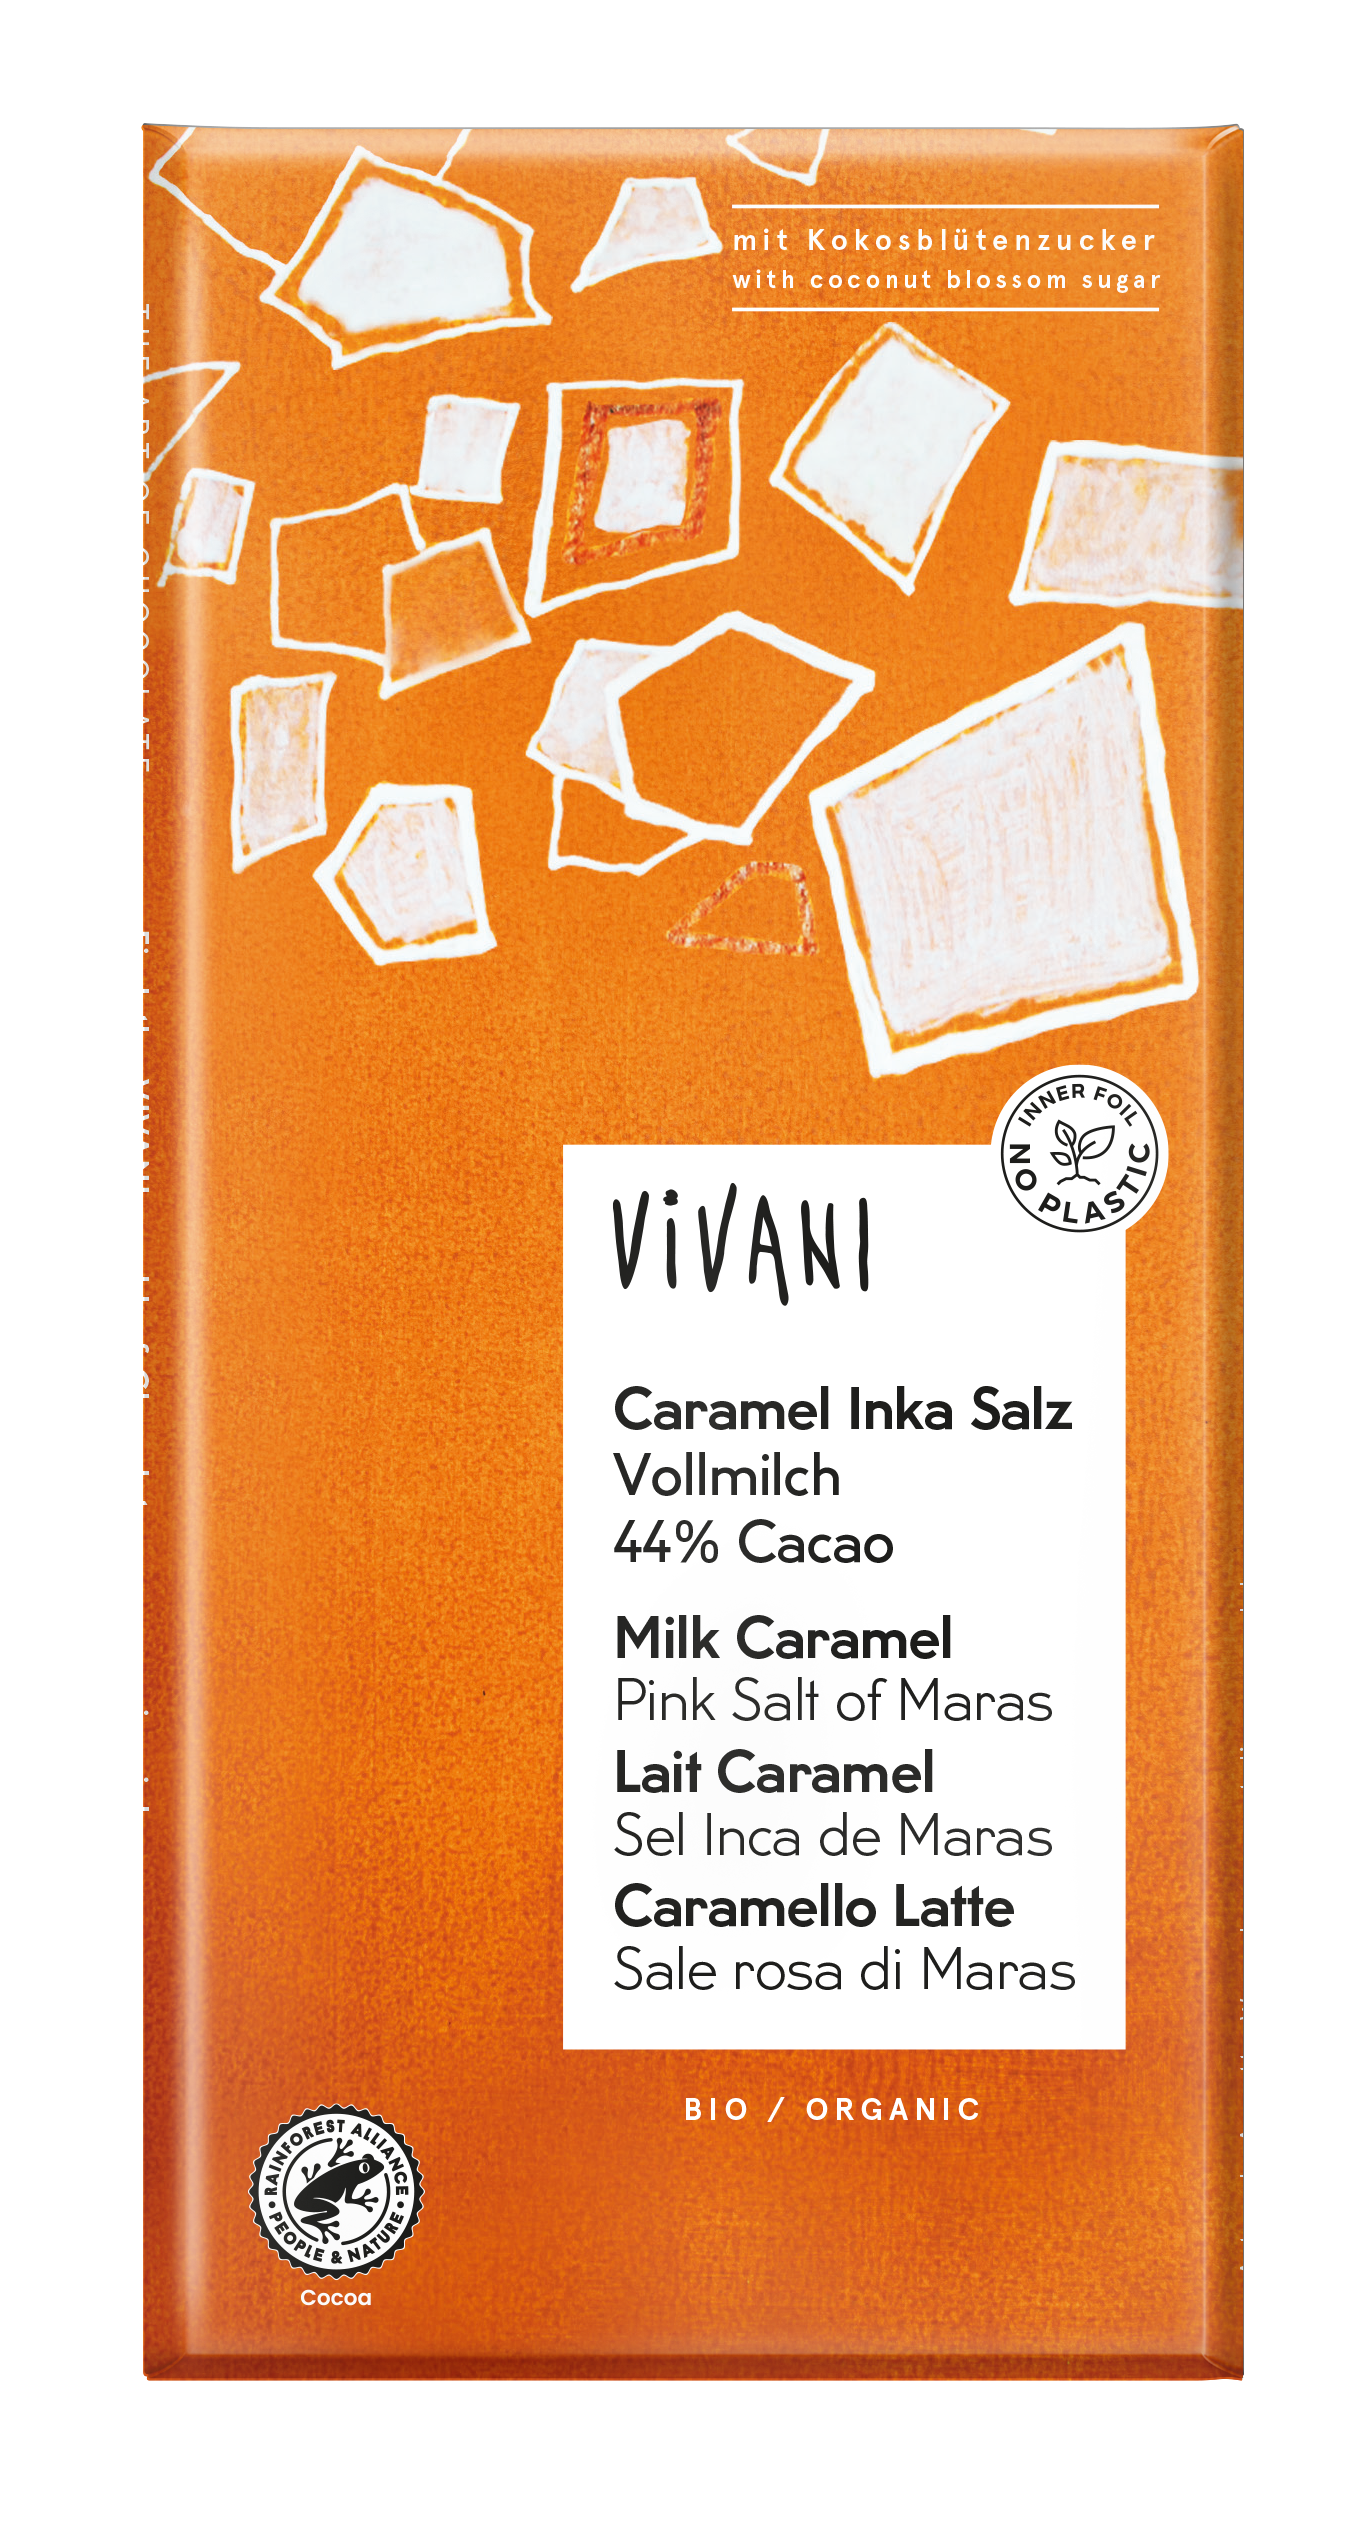 Milk Caramel/Pink Salt of Maras (Org 41432A